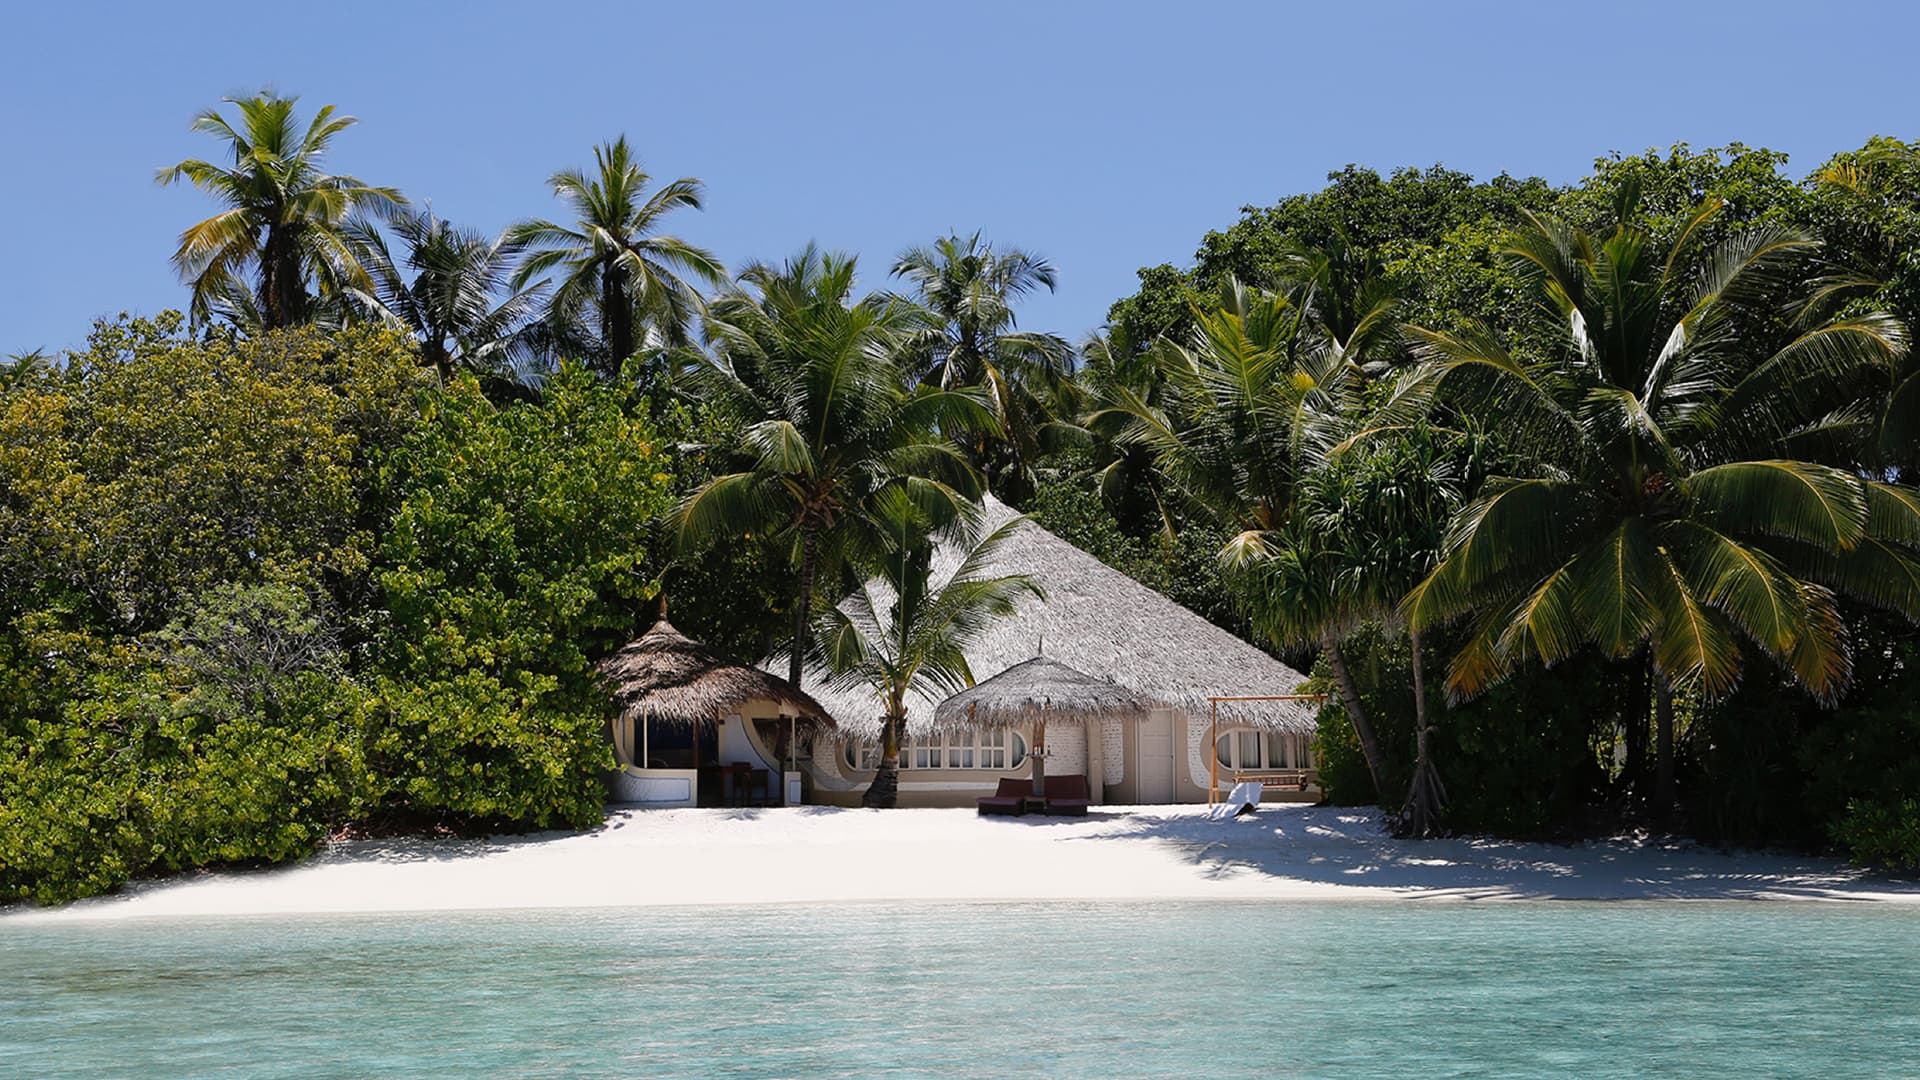 马尔代夫尼卡岛Deluxe beach villa 豪华海滩别墅,尼卡岛酒店攻略 - wee旅